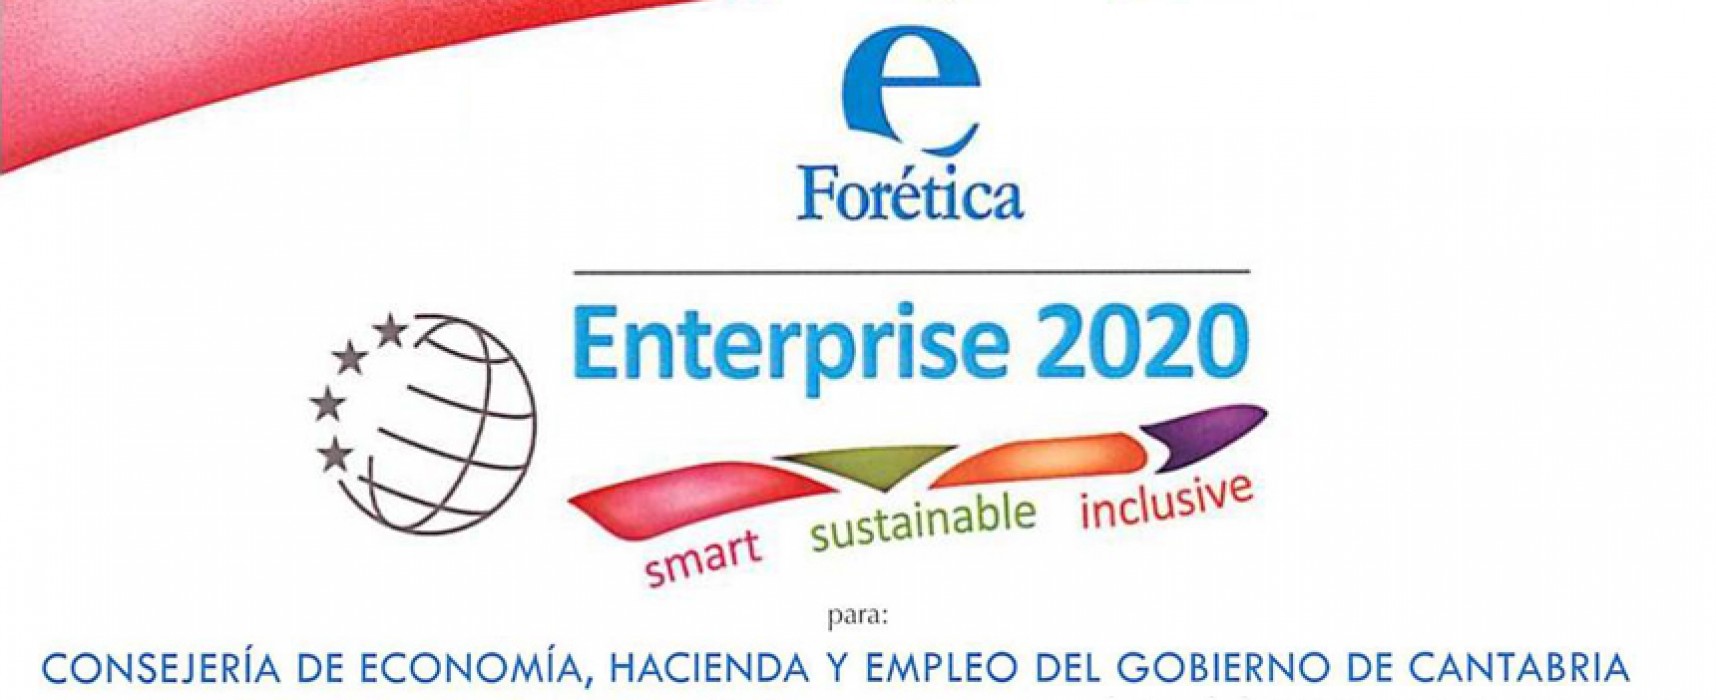 Cantabria Responsable y su compromiso con ‘Enterprise 2020’ en la Comisión Europea